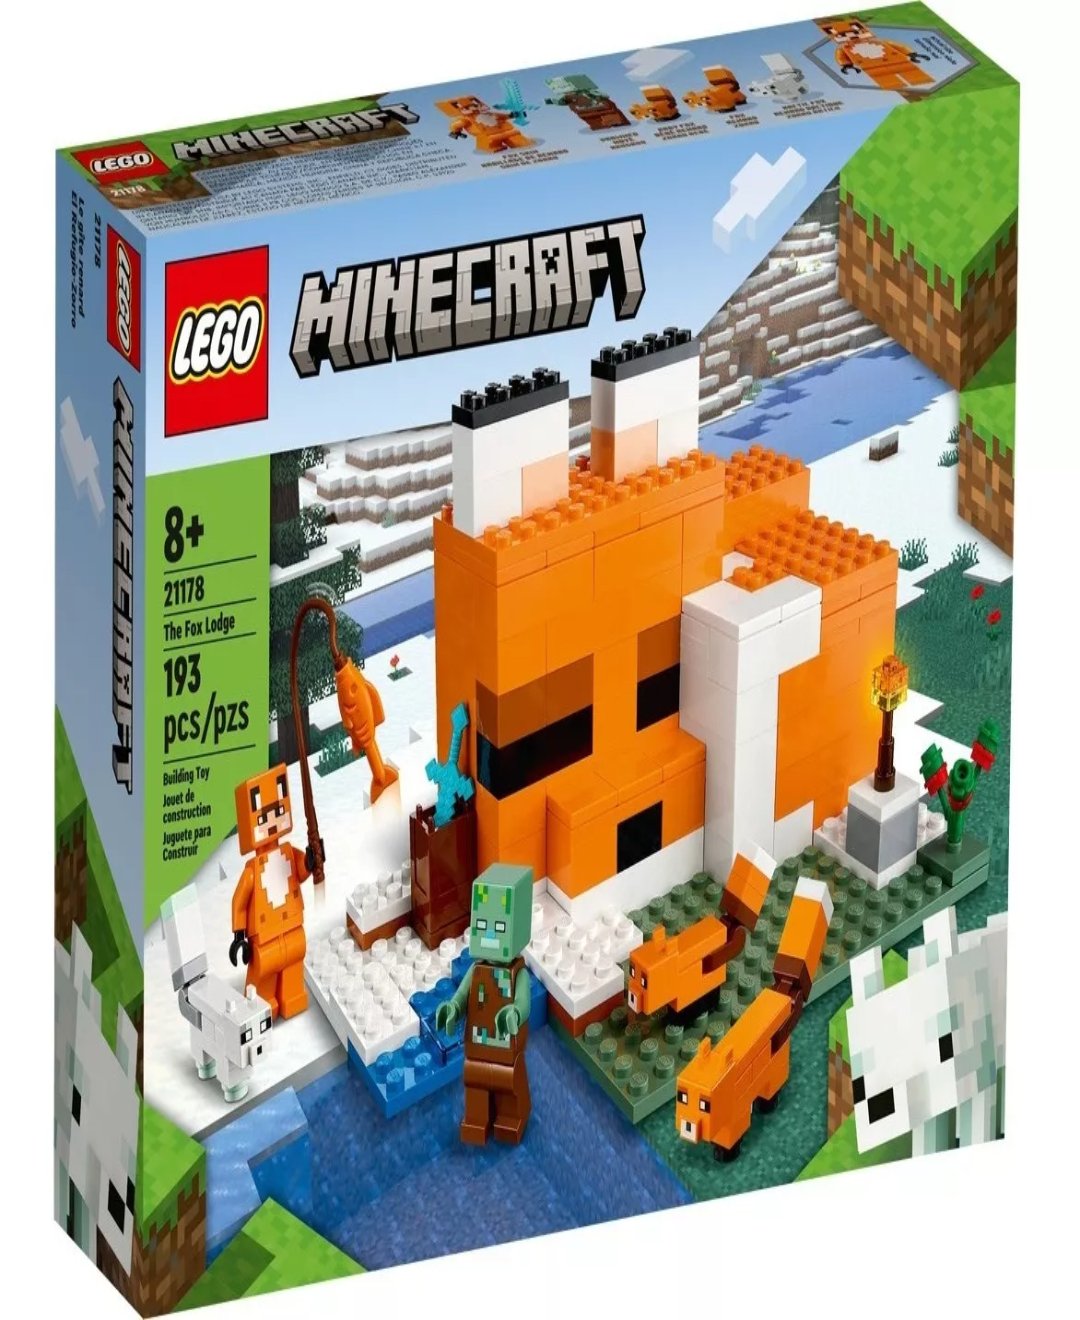 Kit De Construcción Lego Minecraft El Refugio Zorro 21178 8+ Cantidad de piezas 193